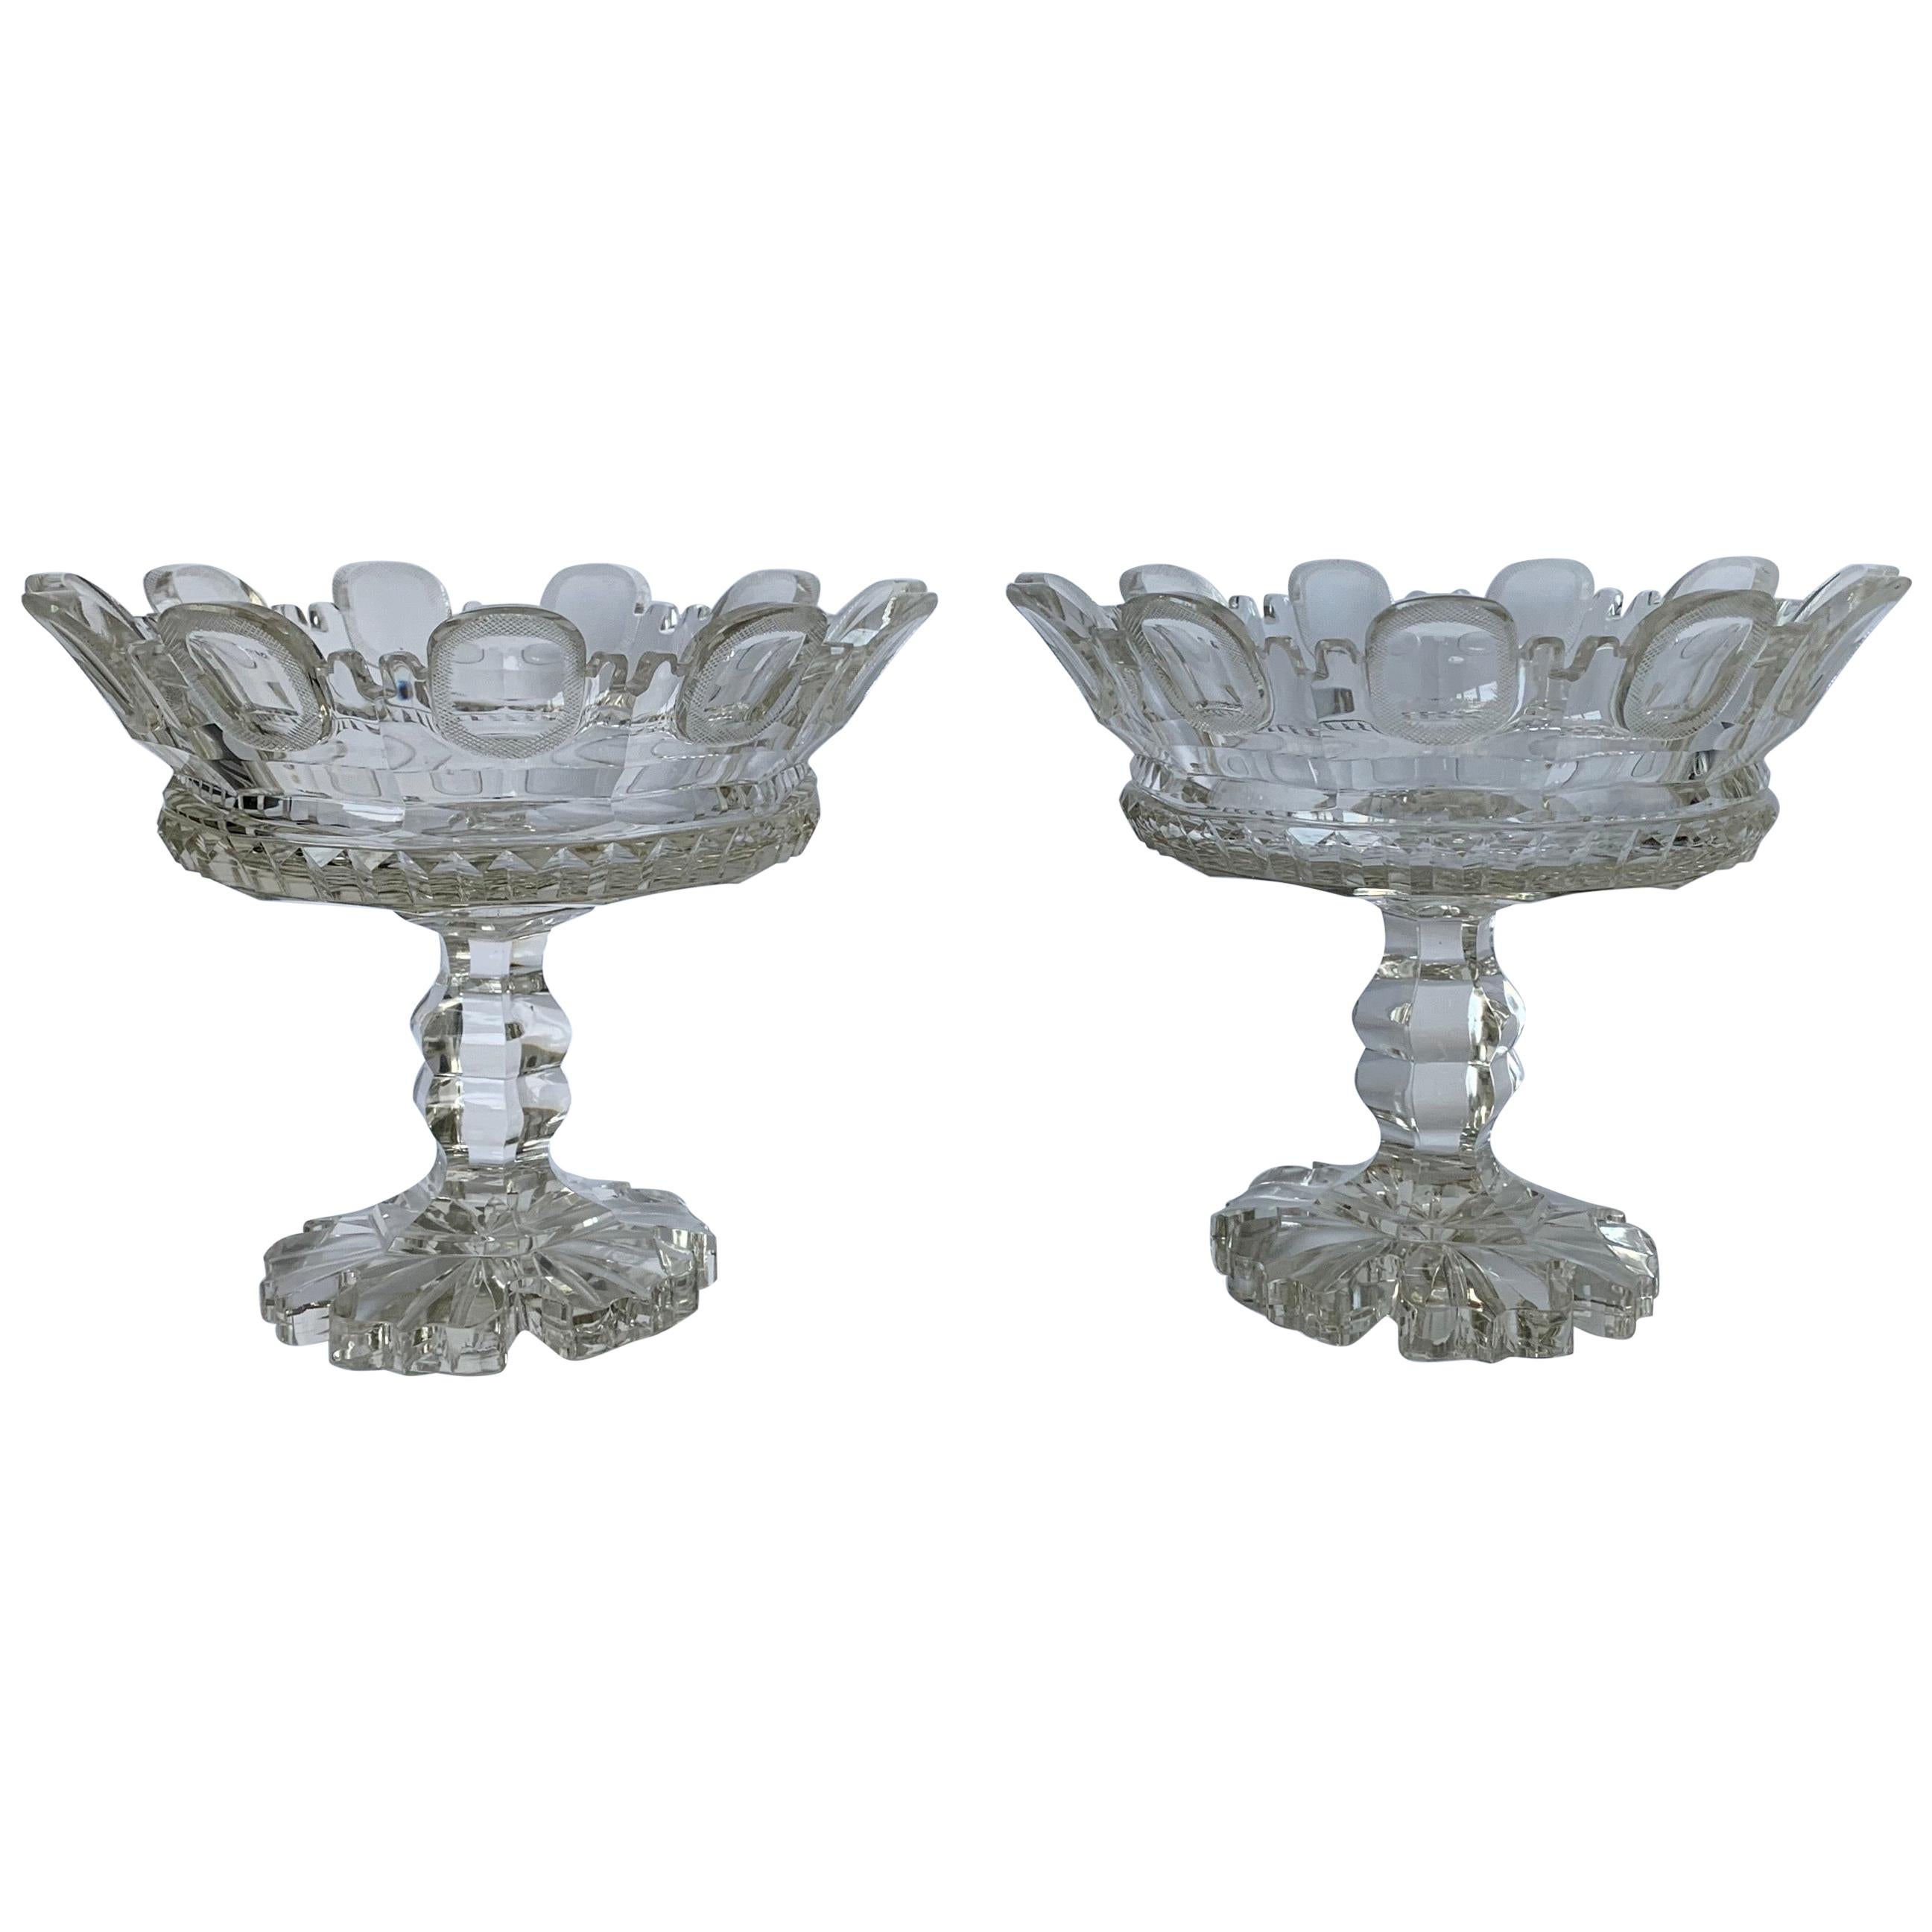 Paire de vases de cheminée en cristal taillé des années 1820